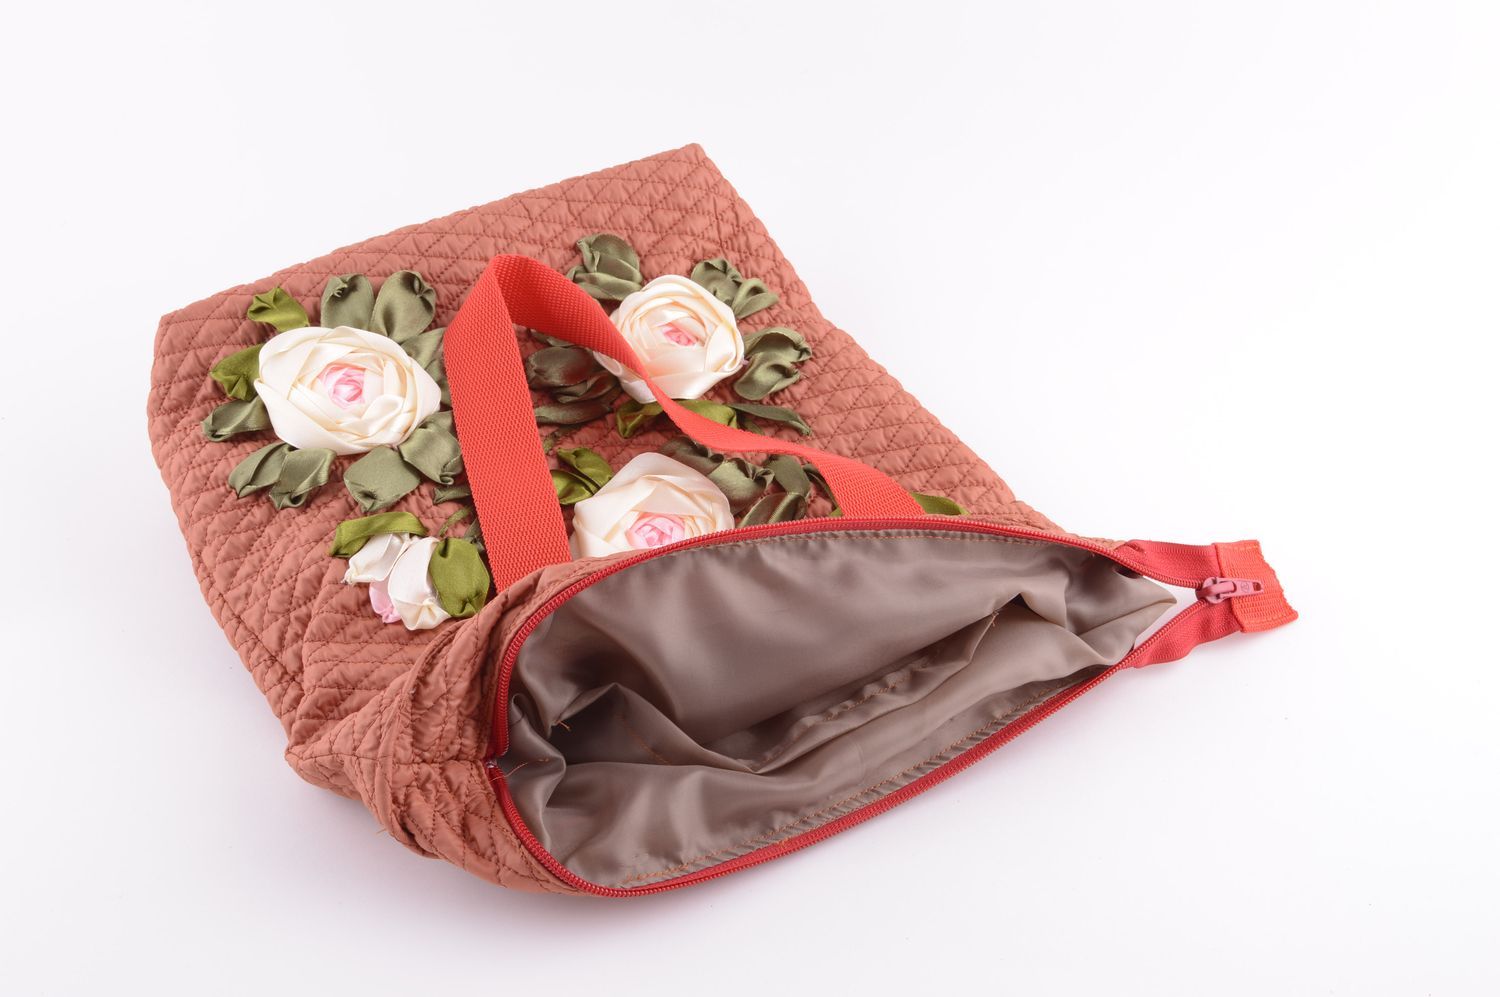 Сумка ручной работы оригинальная сумка на плечо сумка вышитая лентами с розами фото 4